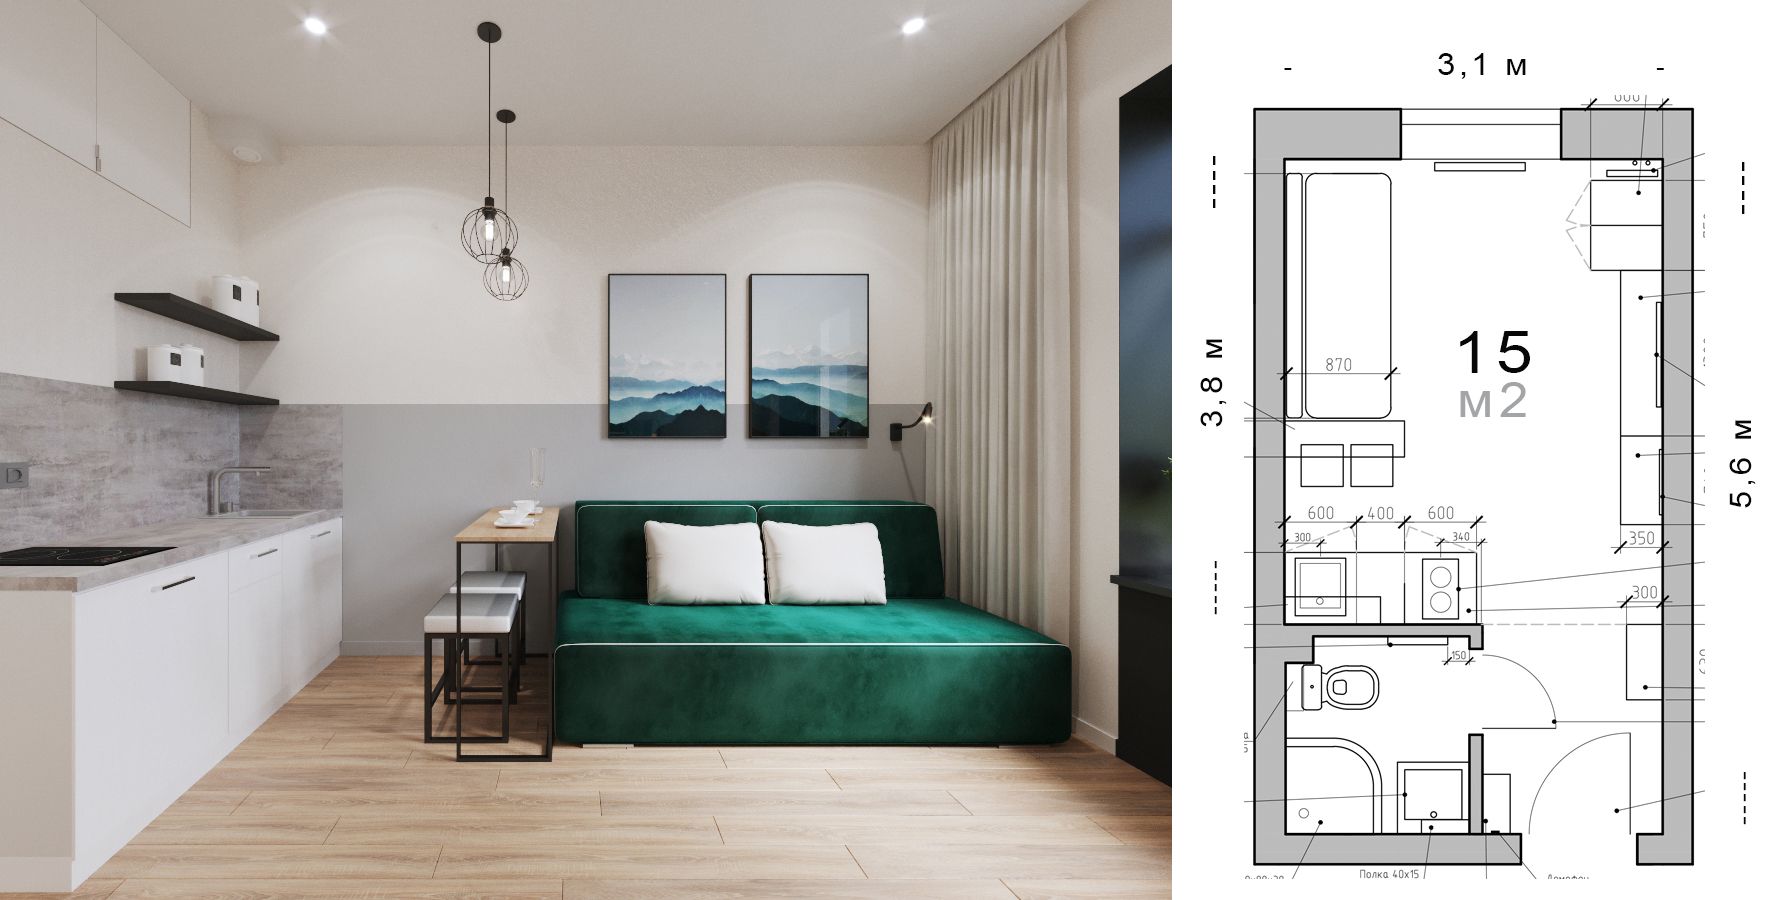 Дизайн проект интерьера квартиры студии апартаментов 15м2 подробный с чертежами, товарной ведомостью